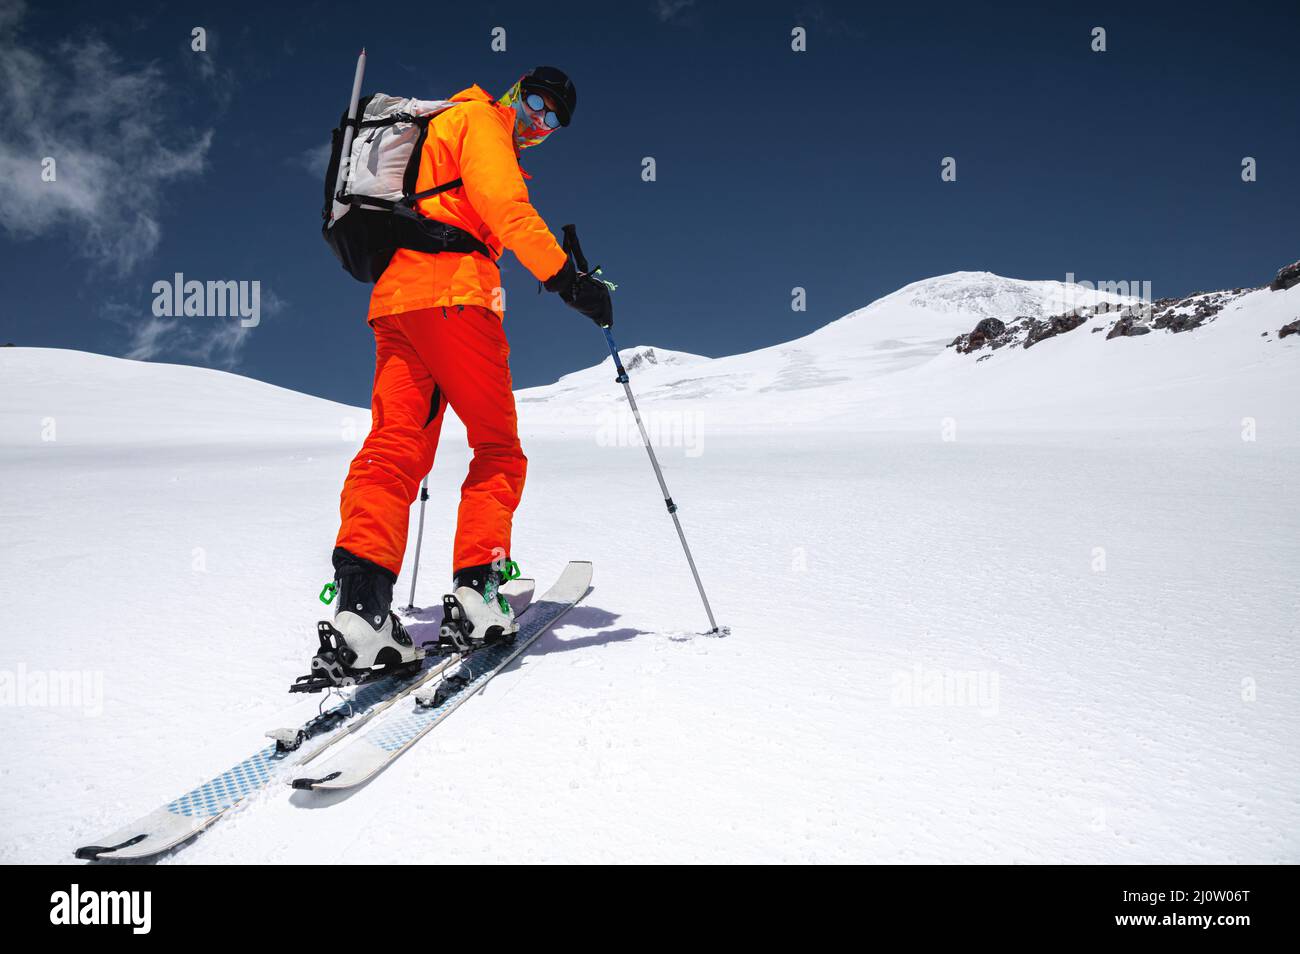 Ein Skifahrer in einem orangefarbenen Anzug Ski in einem Berg abseits der Piste Skifahren im nördlichen kaukasus des Mount Elbrus Stockfoto